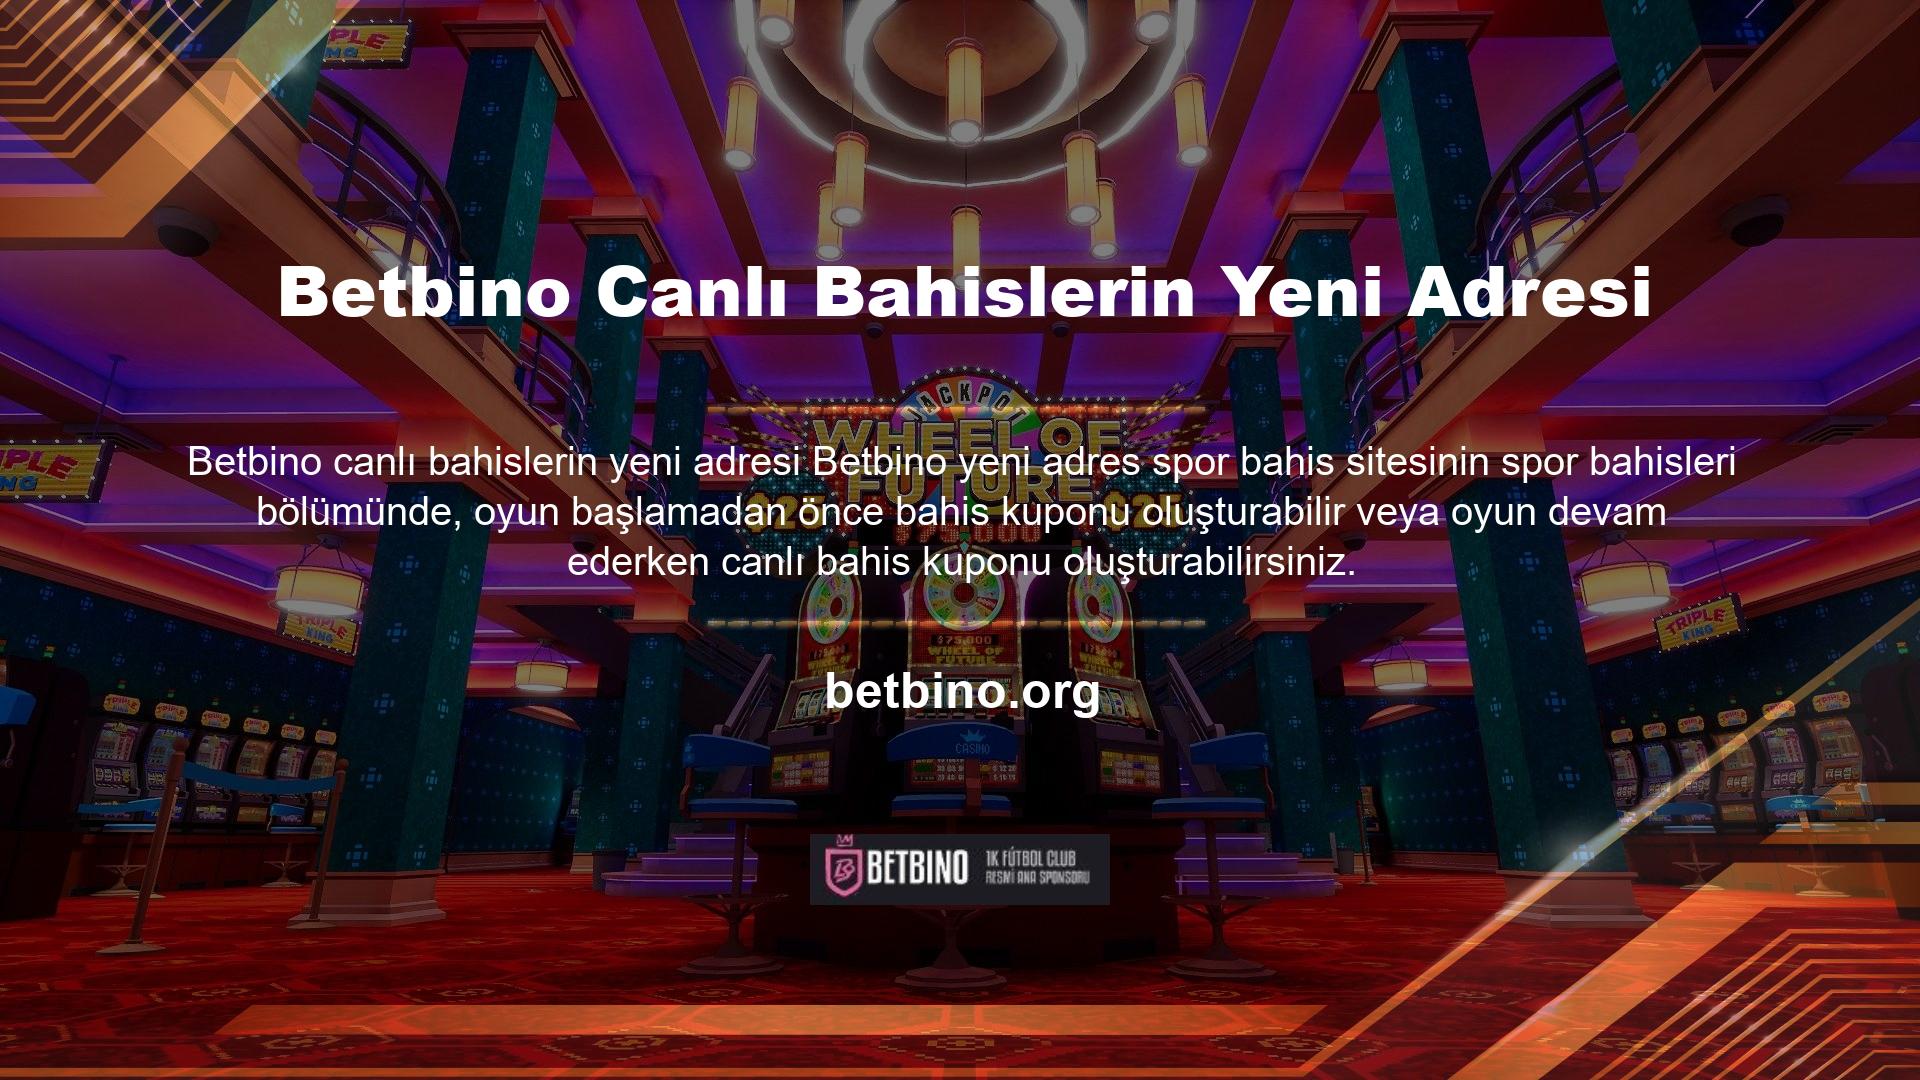 Canlı Bahis, altyapısı ile Betbino Online Canlı Bahis sitesinde oyunculara sunulan, bahissiz bahis özelliğine sahip olup, diğer bahis sitelerine göre daha büyük miktarlar ve daha kapsamlı bahis seçenekleri sunmaktadır